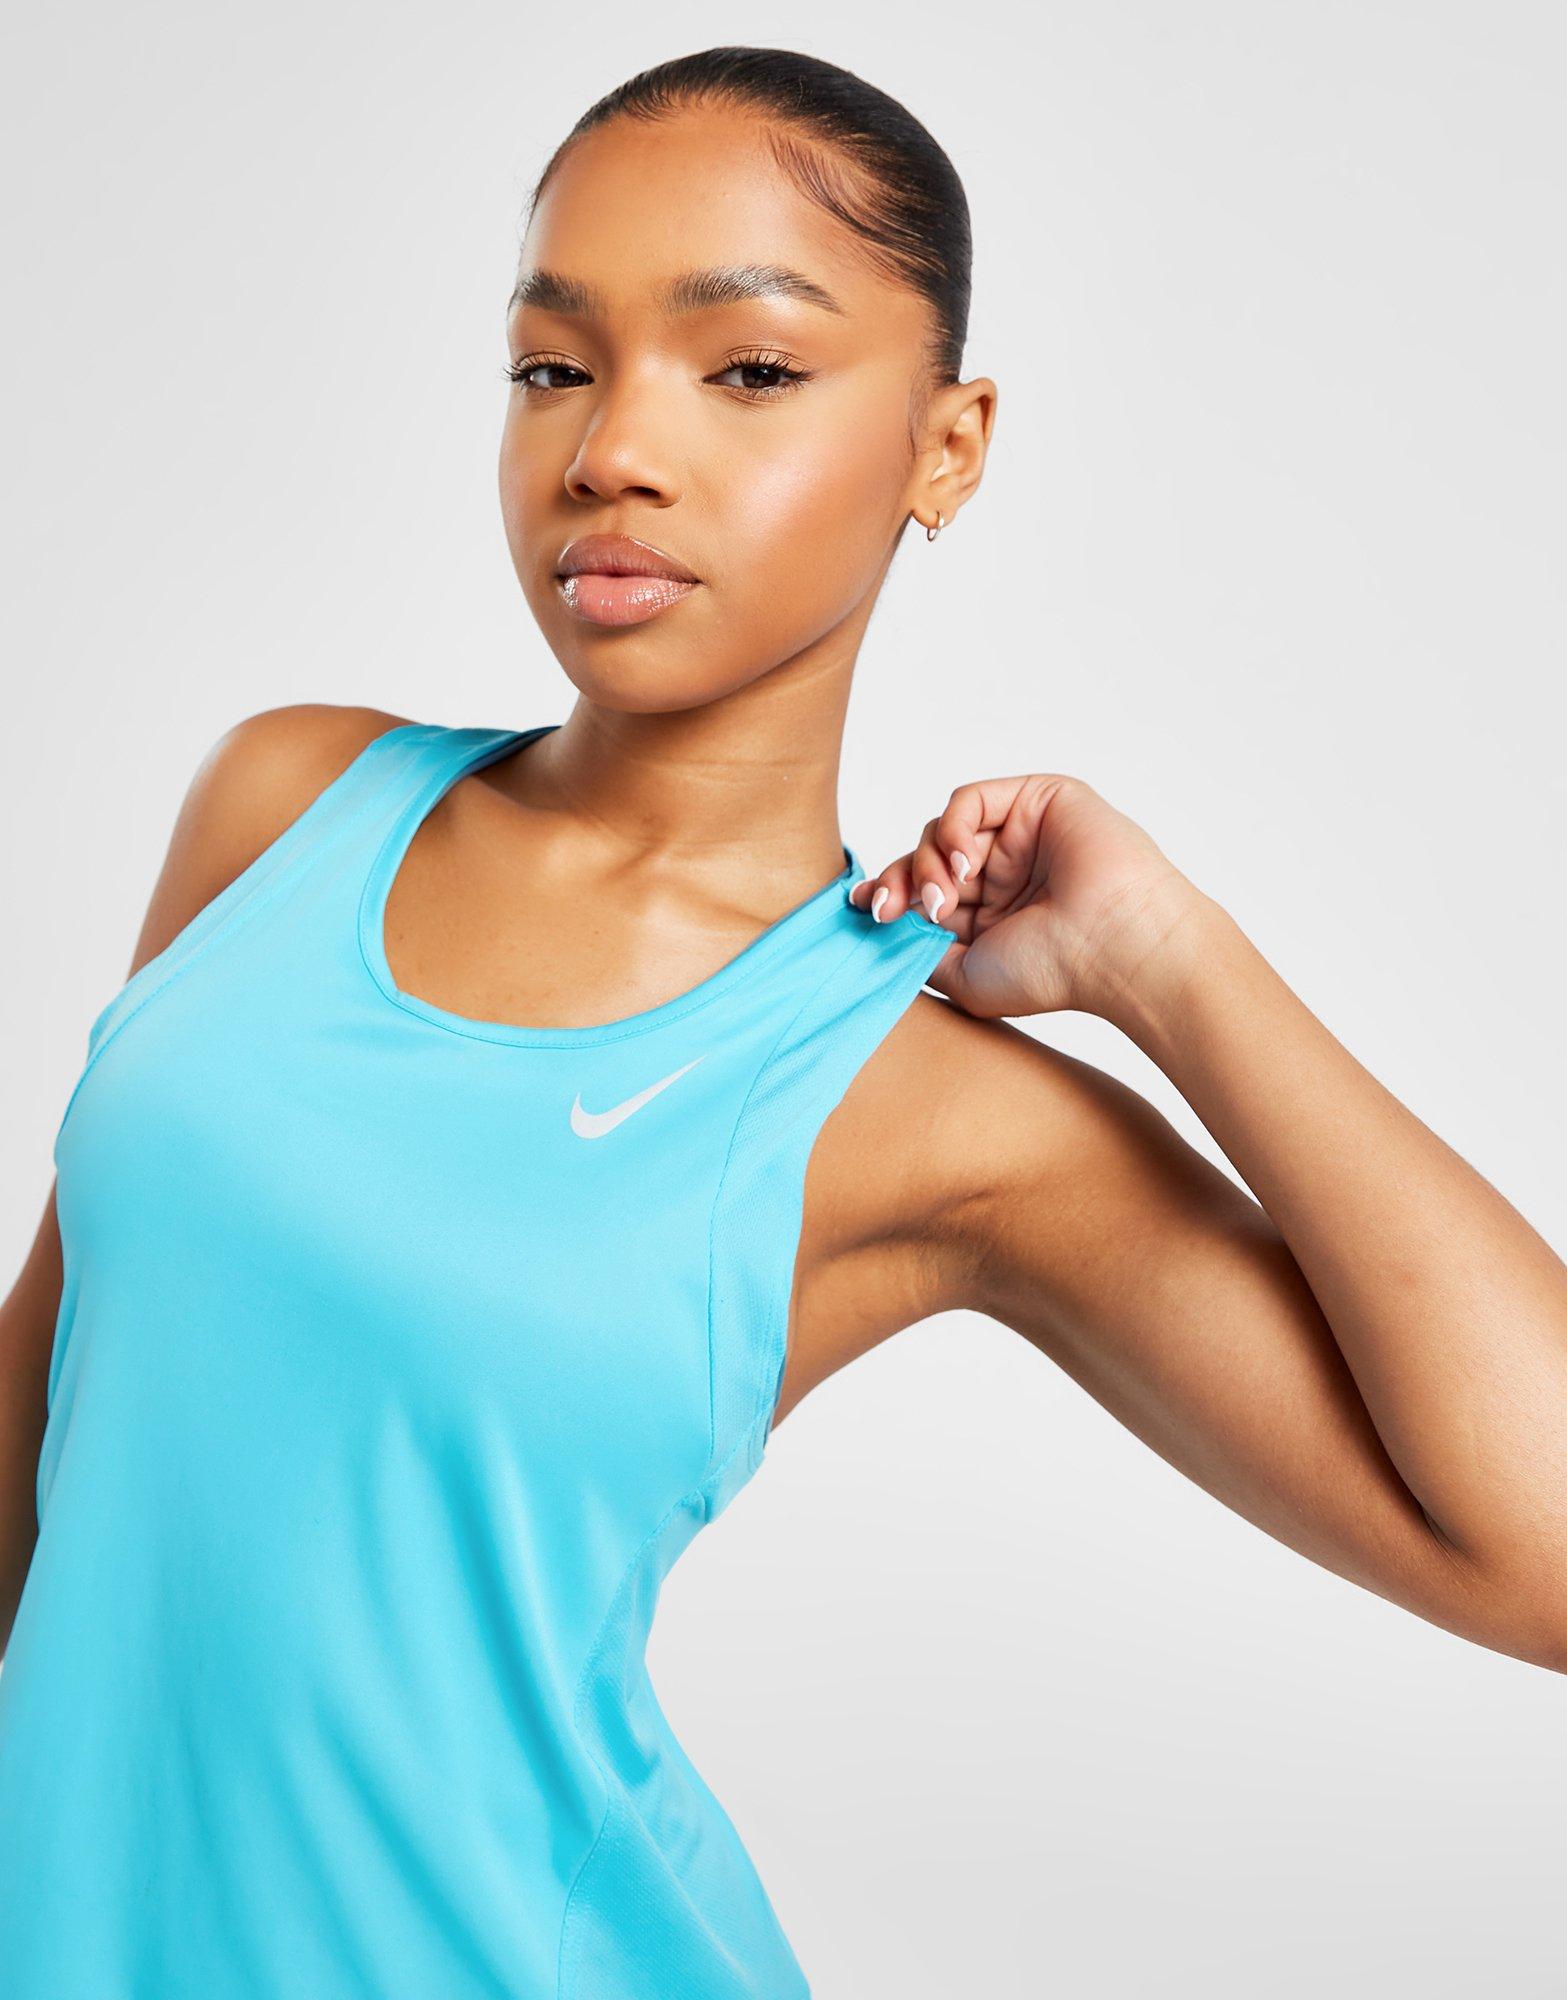 Nike Women's - Running Miler Tank Top - Black